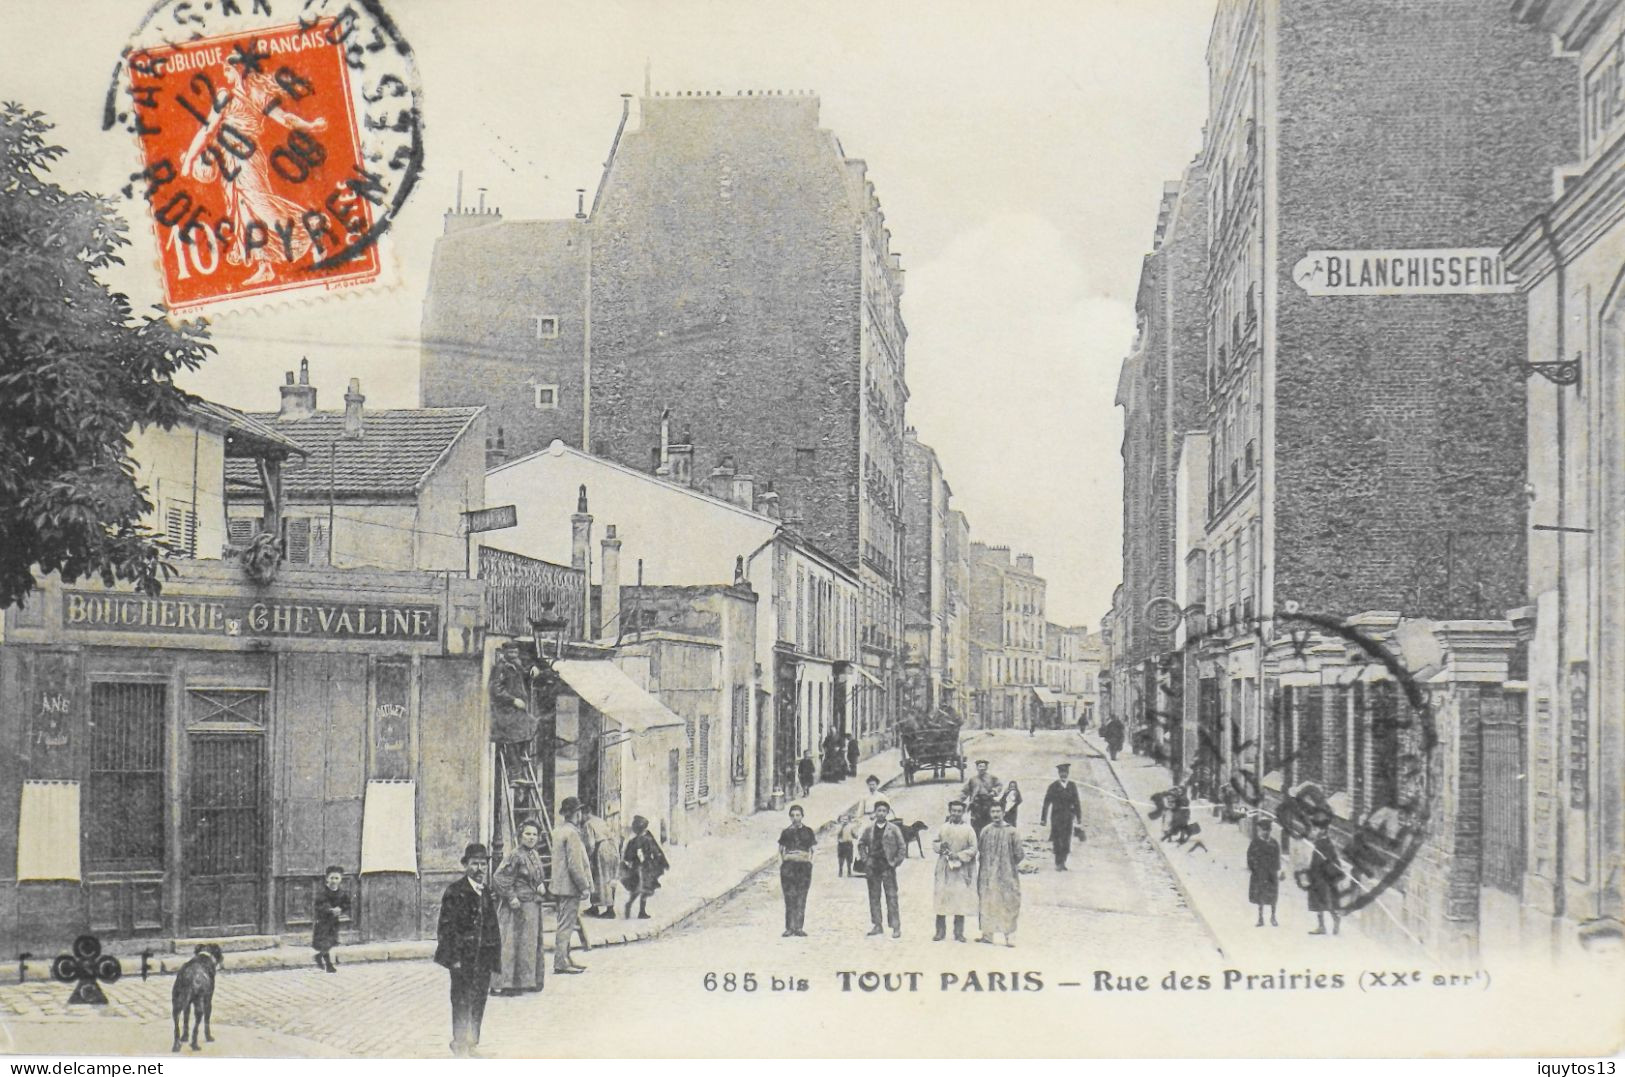 CPA. [75] > TOUT PARIS > N° 685 Bis - RUE DES PRAIRIES - ALLUMEUR DE REVERBERE - (XXe Arrt.) - 1909 - TBE - Arrondissement: 20